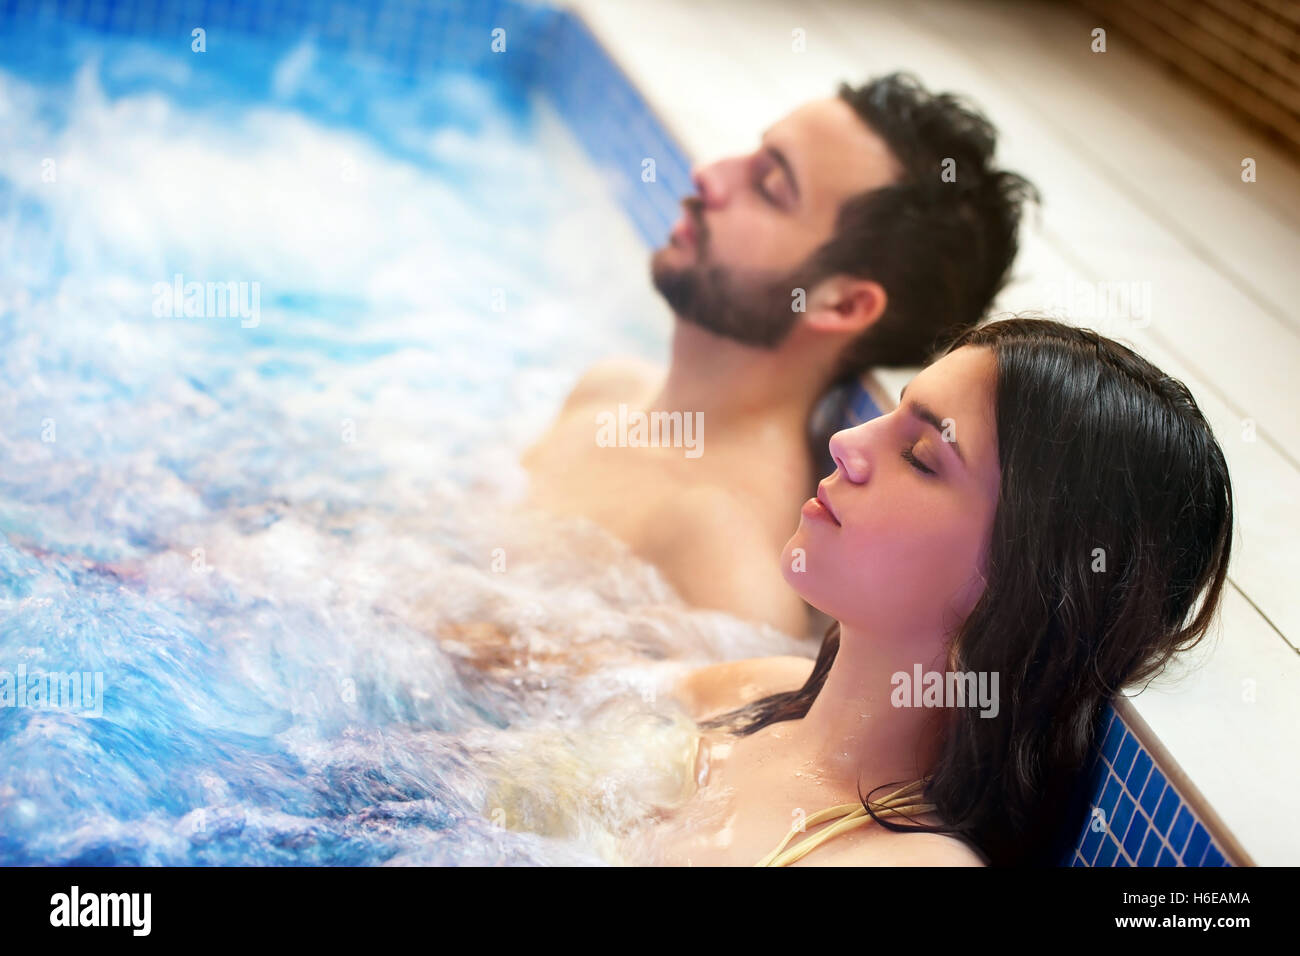 Nahaufnahme, Porträt des jungen Paares Entspannung im Spa Whirlpool. Paar zusammen in Blase Wasser mit Augen geschlossen. Stockfoto